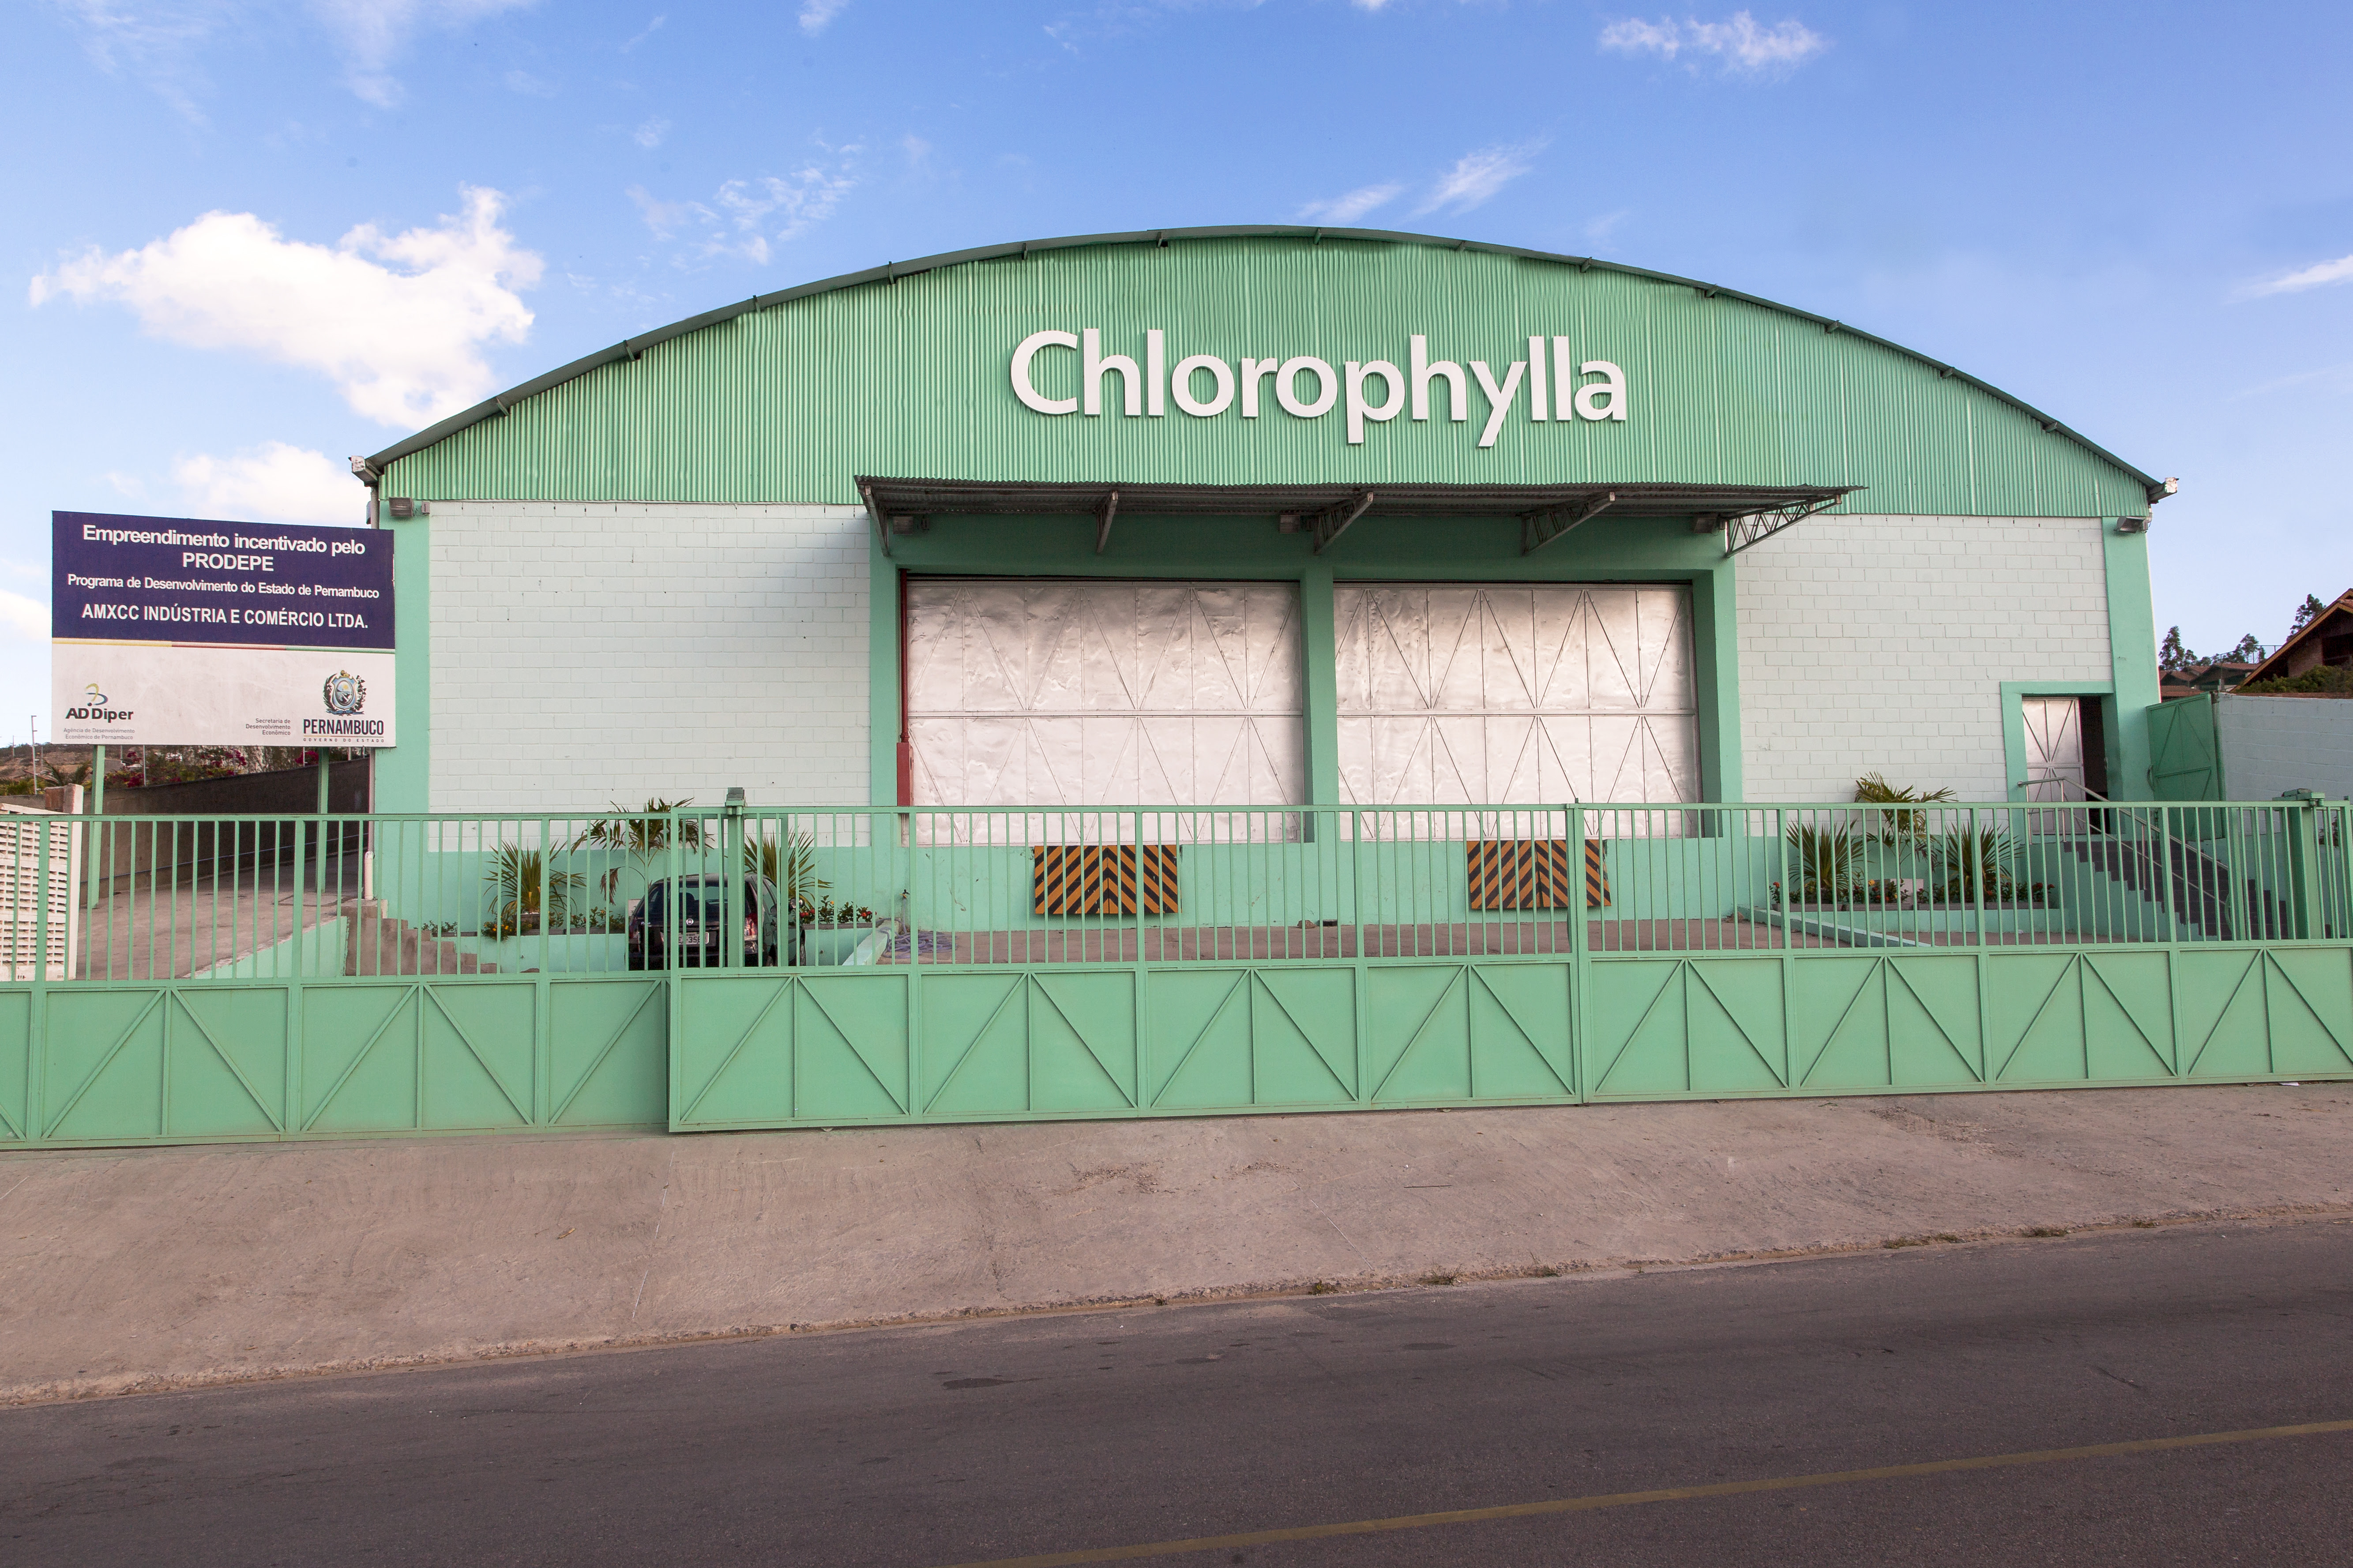 Chlorophylla